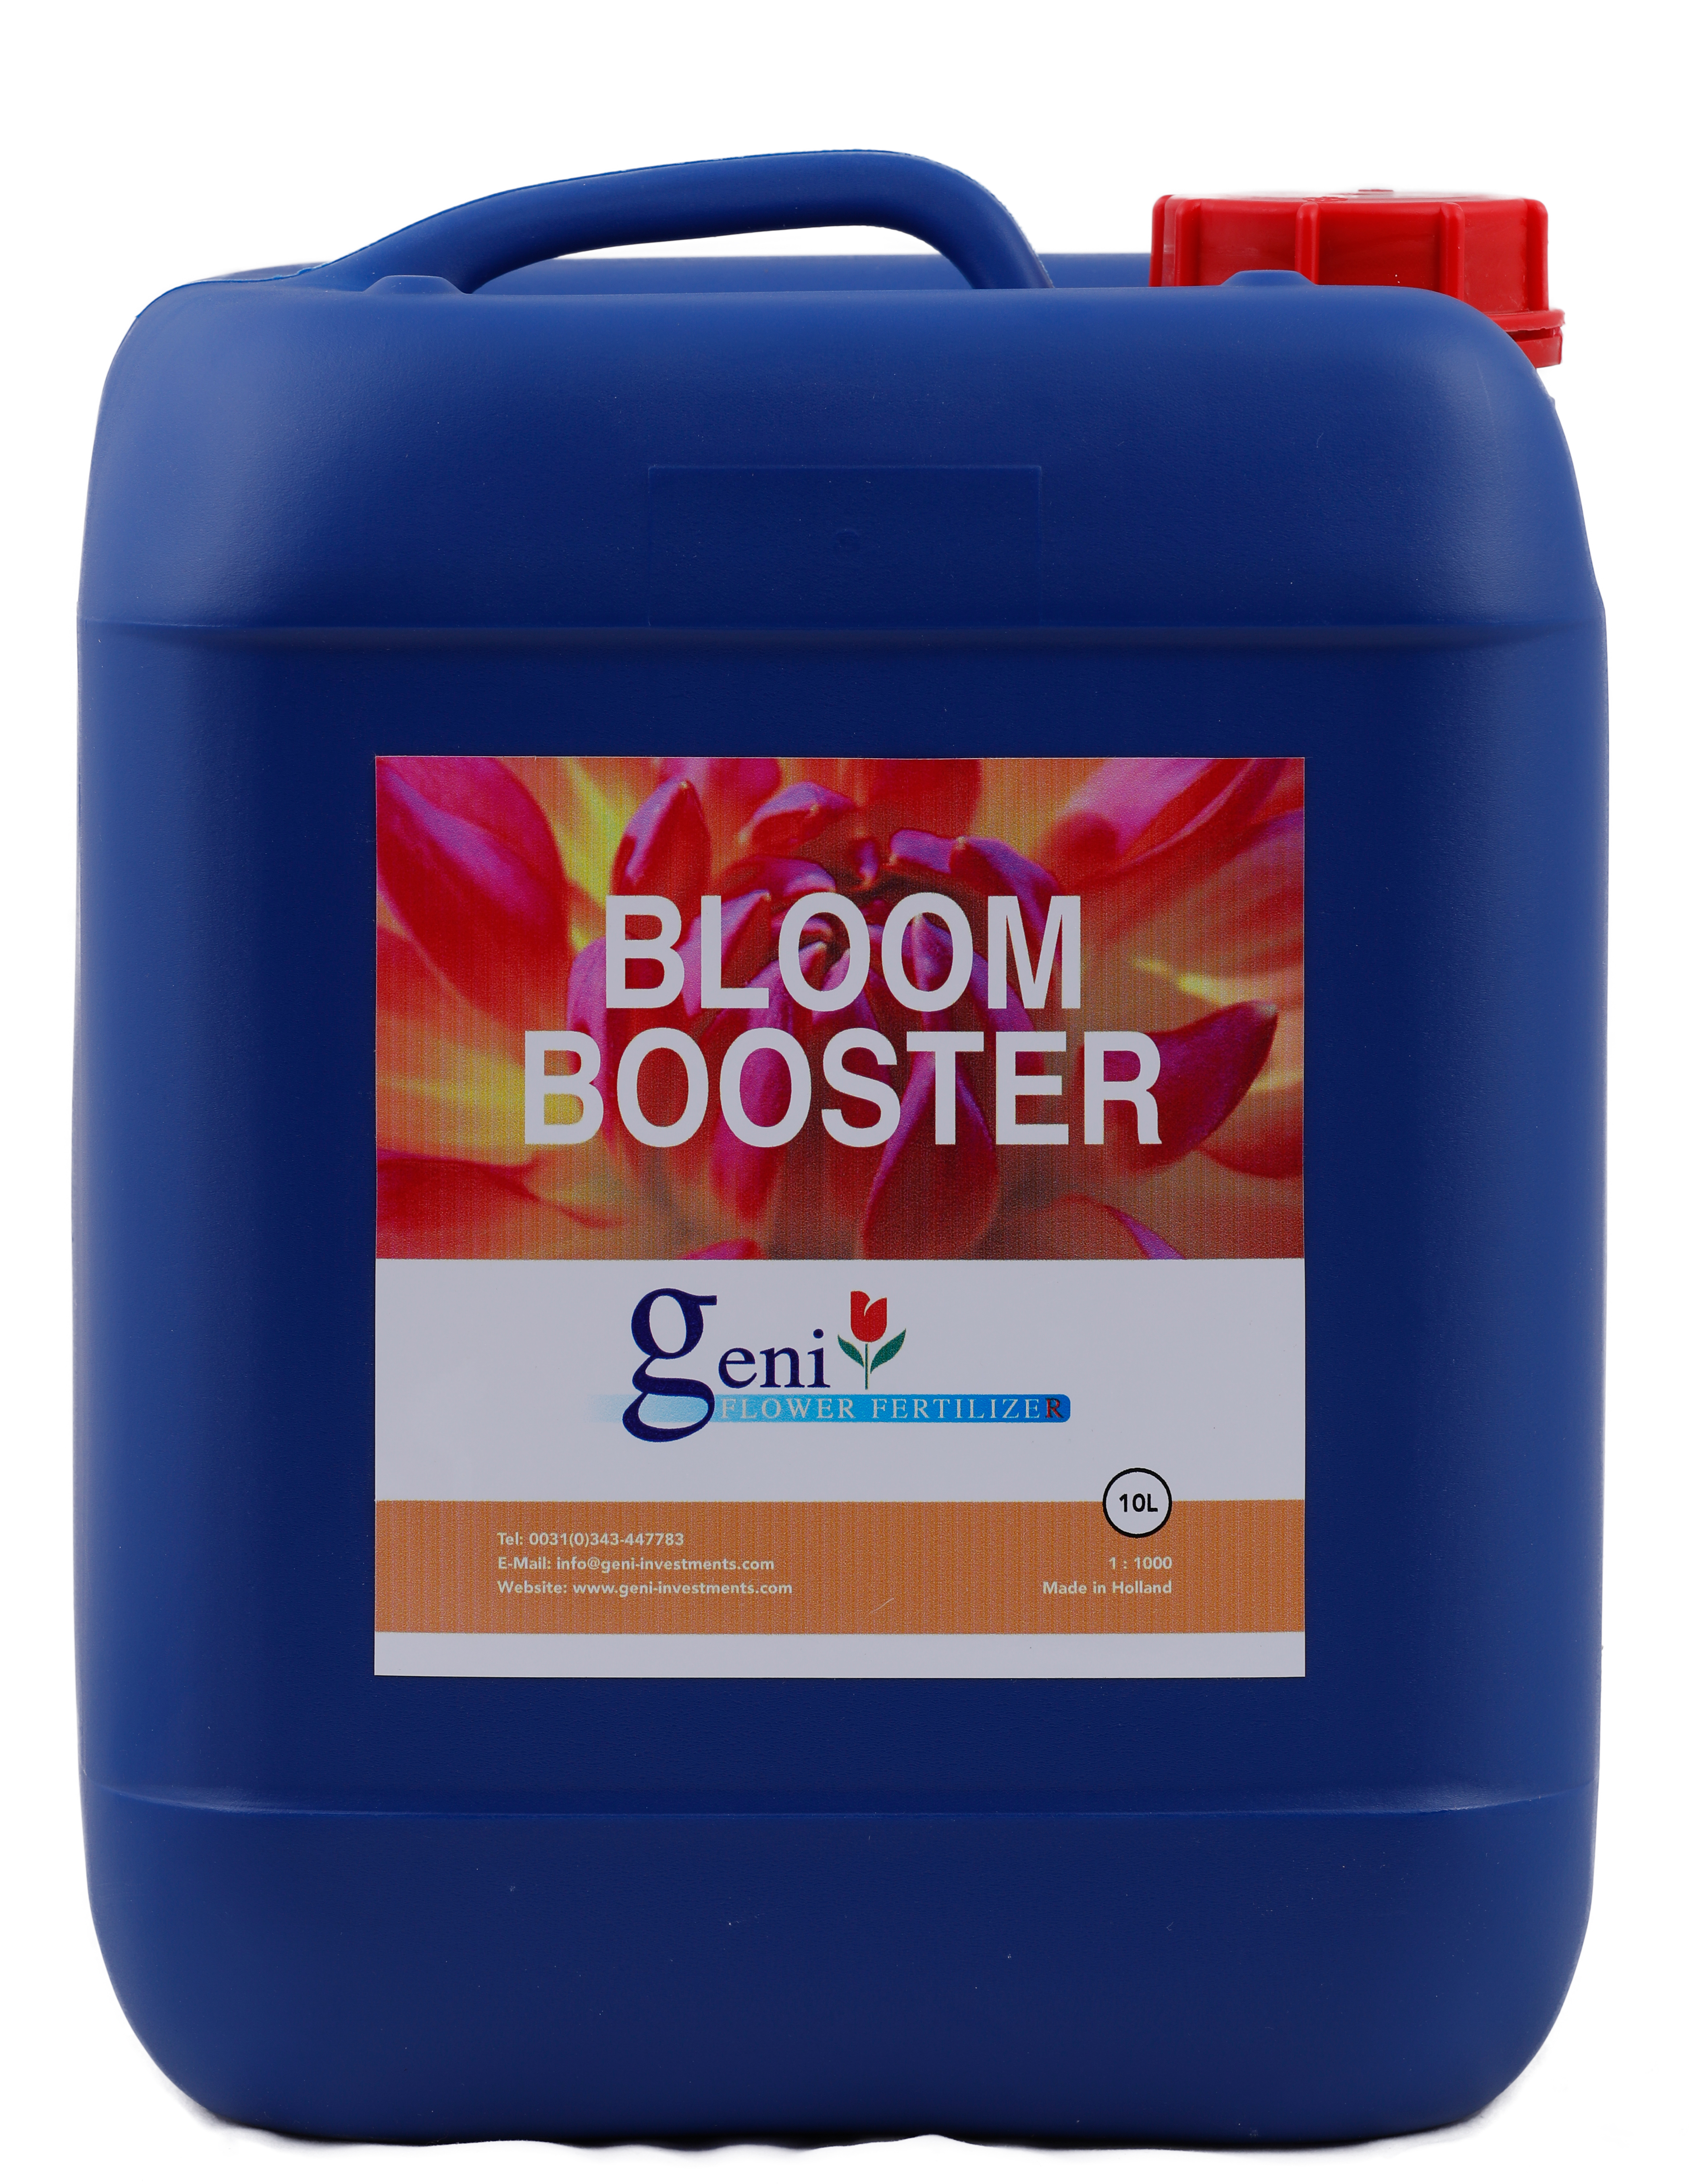 Bloom Bosster